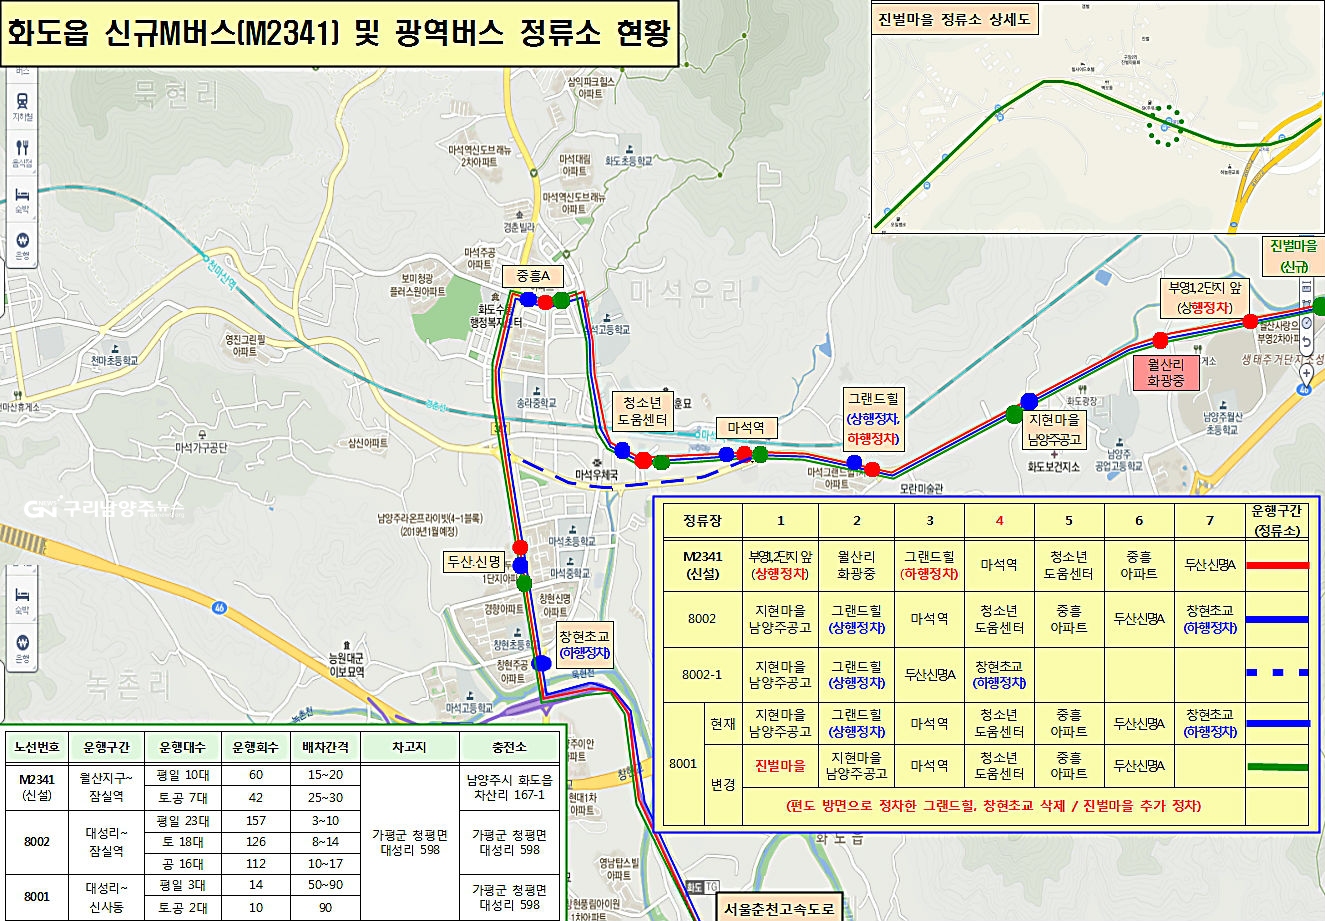 화도읍 신규M버스(M2341) 및 광역버스 정류소 현황(자료=조응천 의원실)